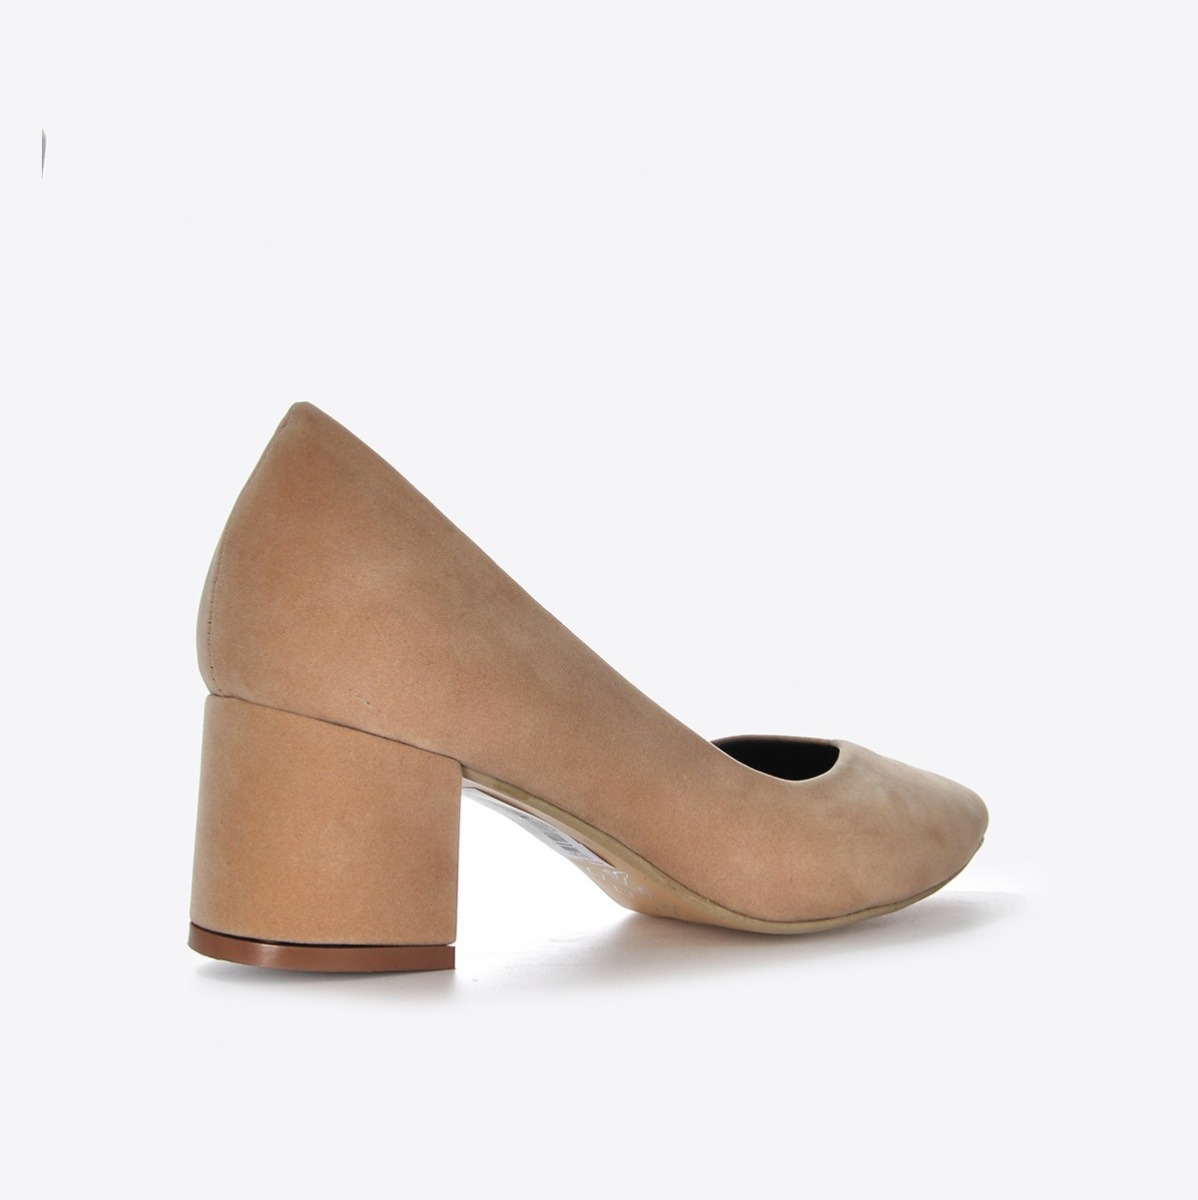 Flo Kadın  Ten Süet Klasik Topuklu Ayakkabı VZN21-040Y. 4